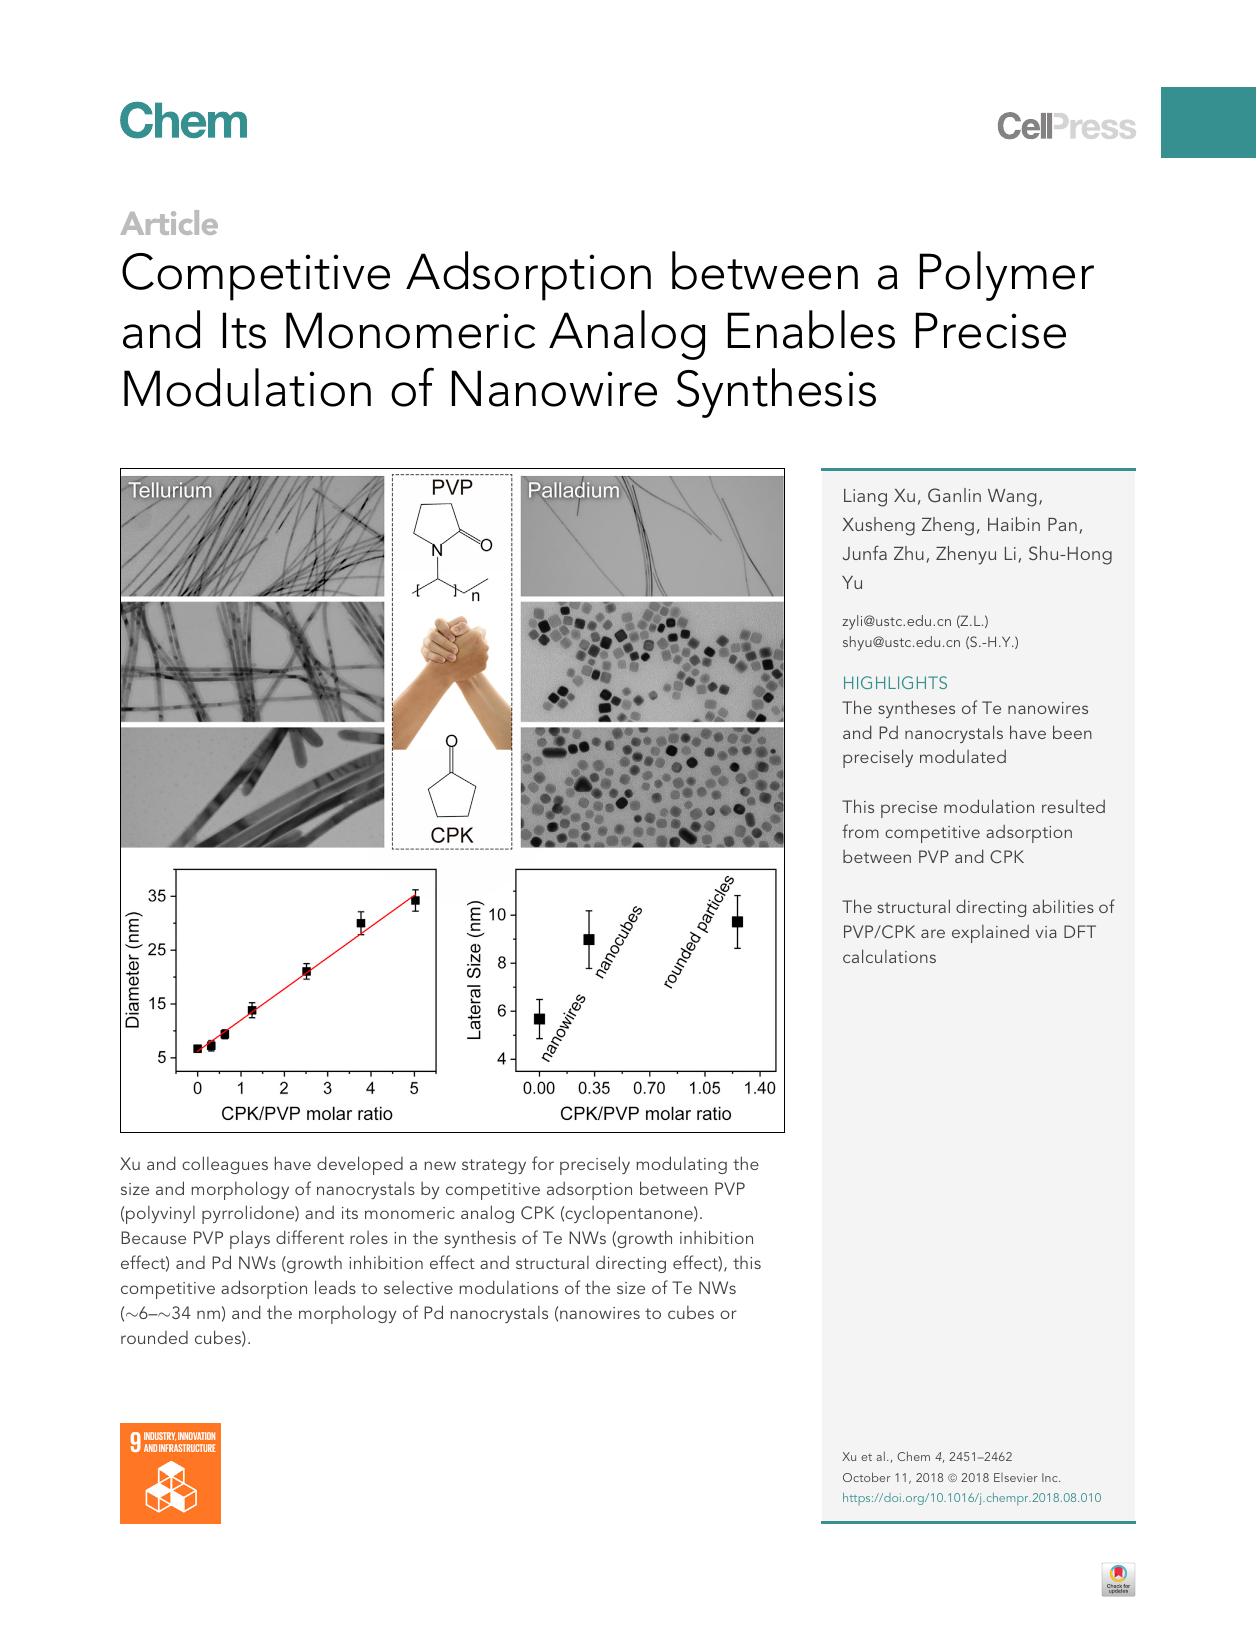 Competitive Adsorption between a Polymer and Its Monomeric Analog Enables Precise Modulation of Nanowire Synthesis by Liang Xu & Ganlin Wang & Xusheng Zheng & Haibin Pan & Junfa Zhu & Zhenyu Li & Shu-Hong Yu